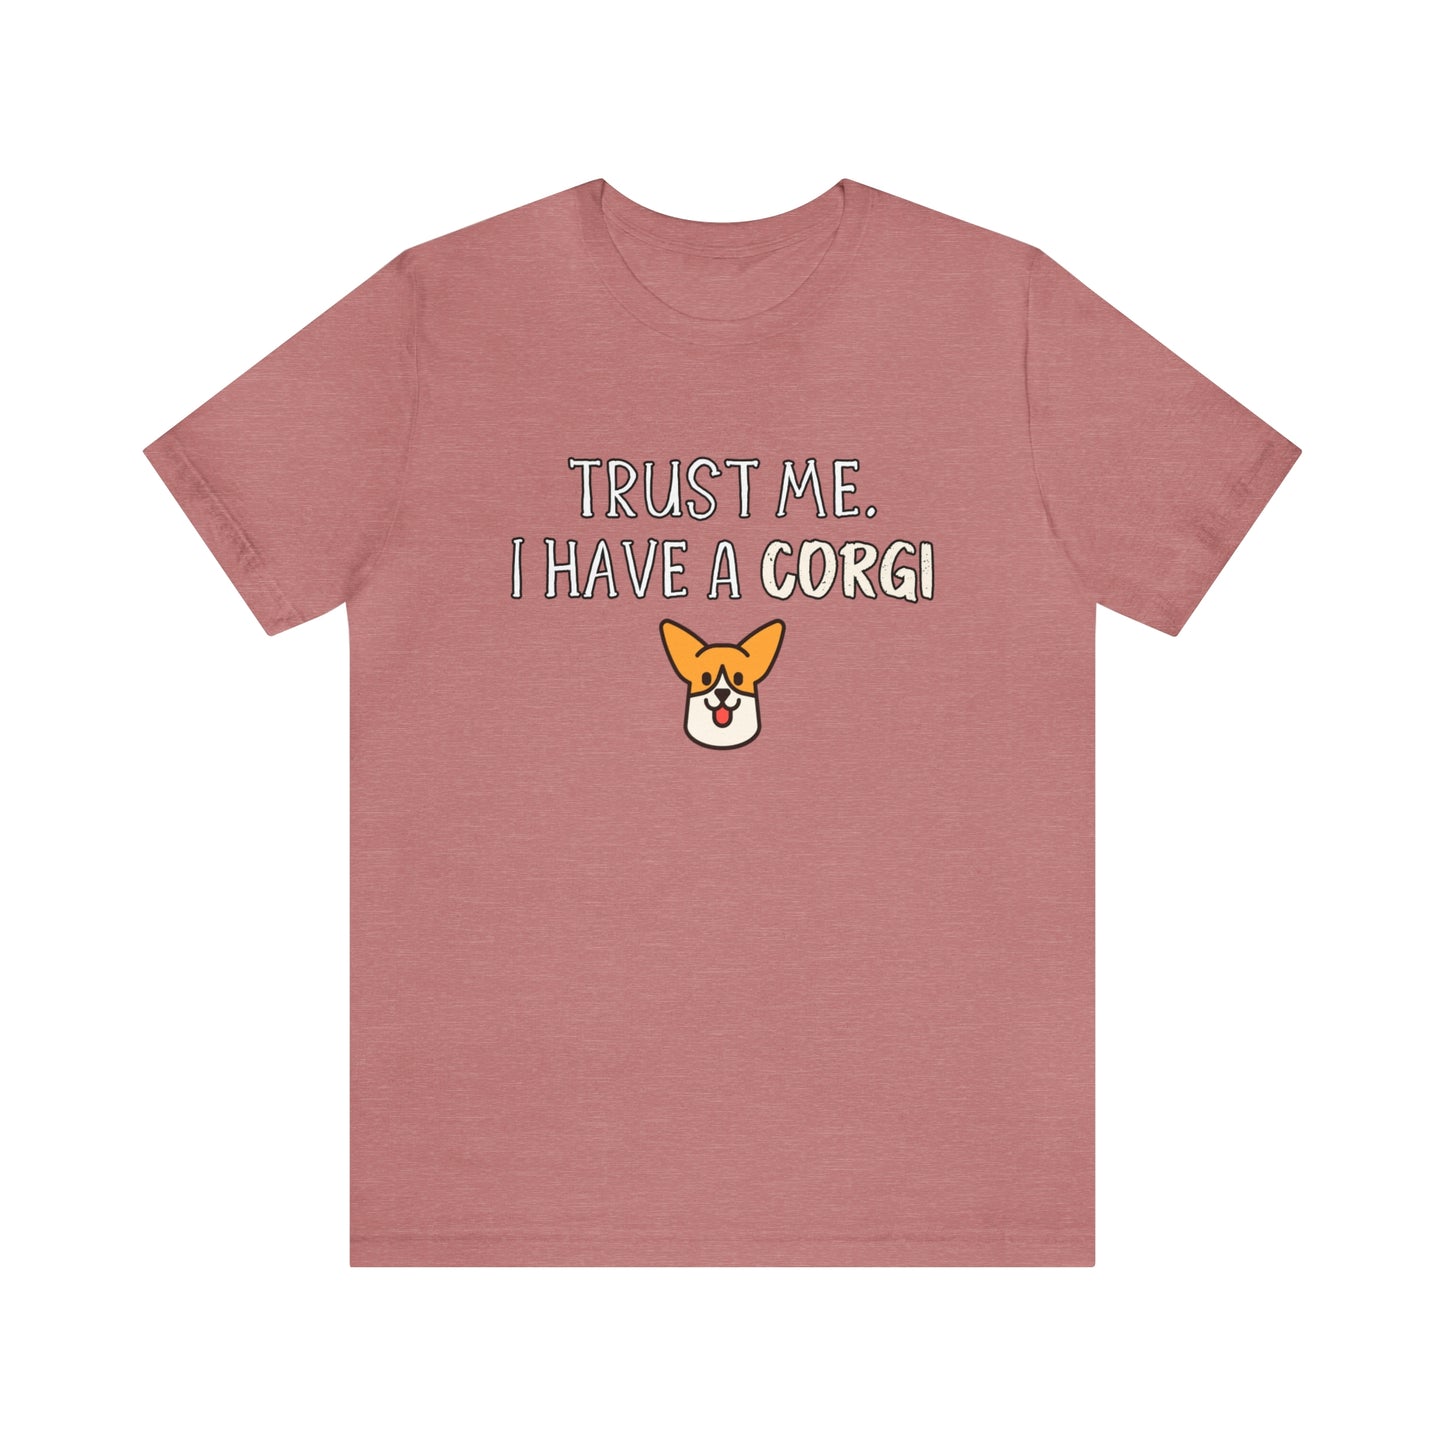 corgi original t shirt pink